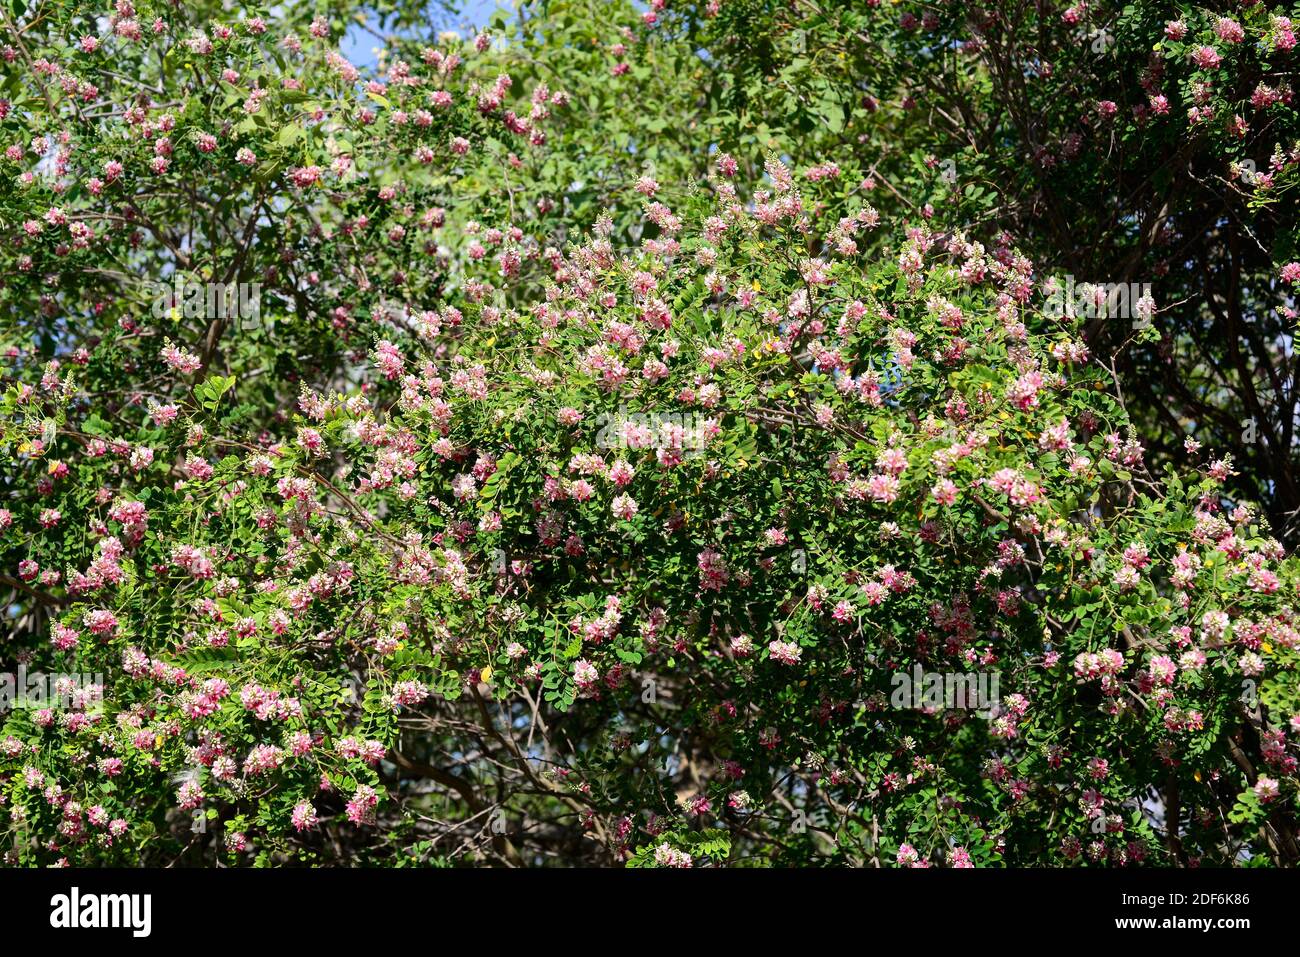 El río indigo (Indigofera jucunda) es un gran arbusto nativo de Sudáfrica. Foto de stock